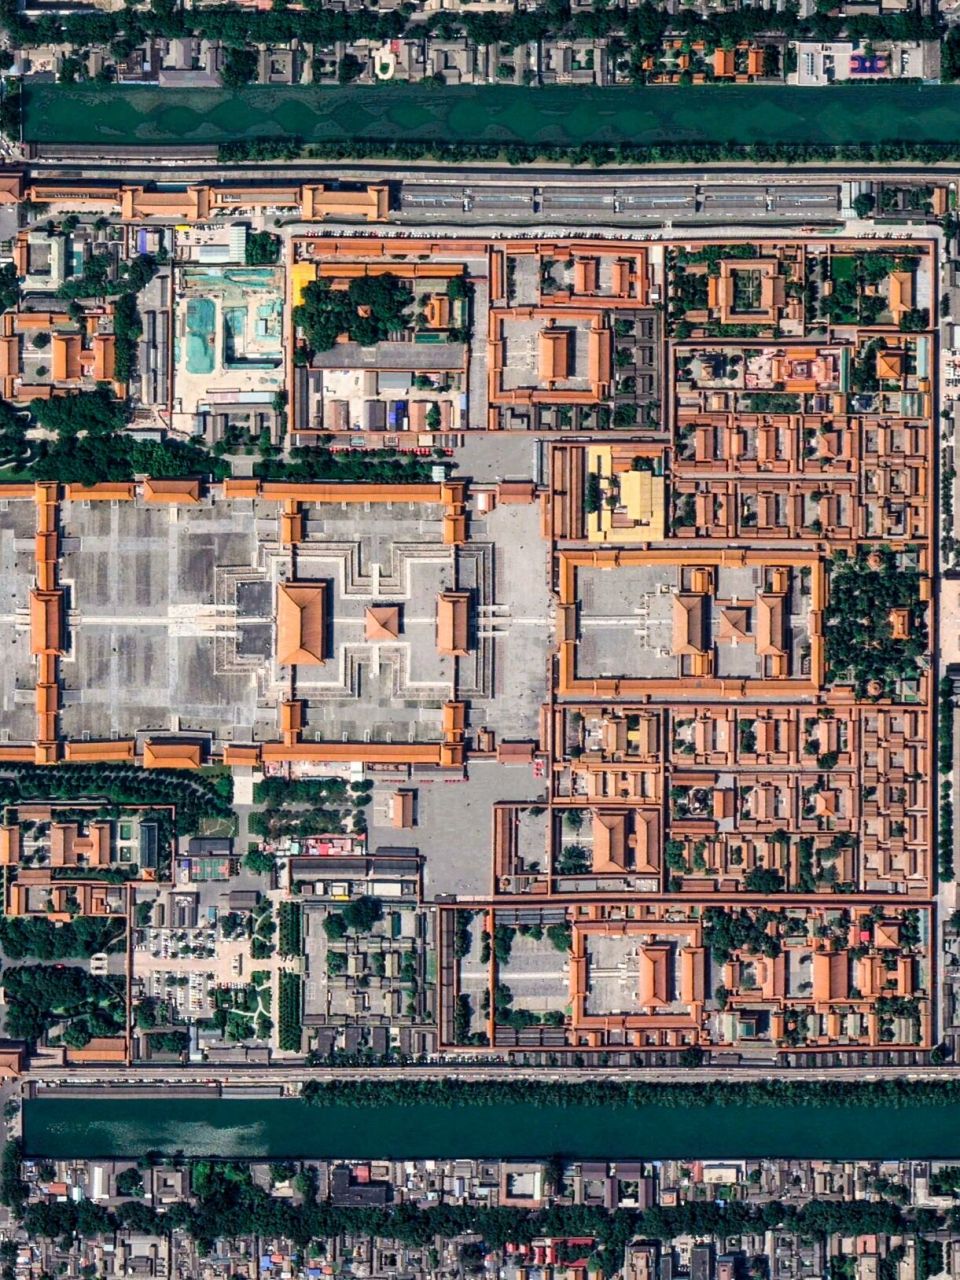 北京故宫全景平面图图片